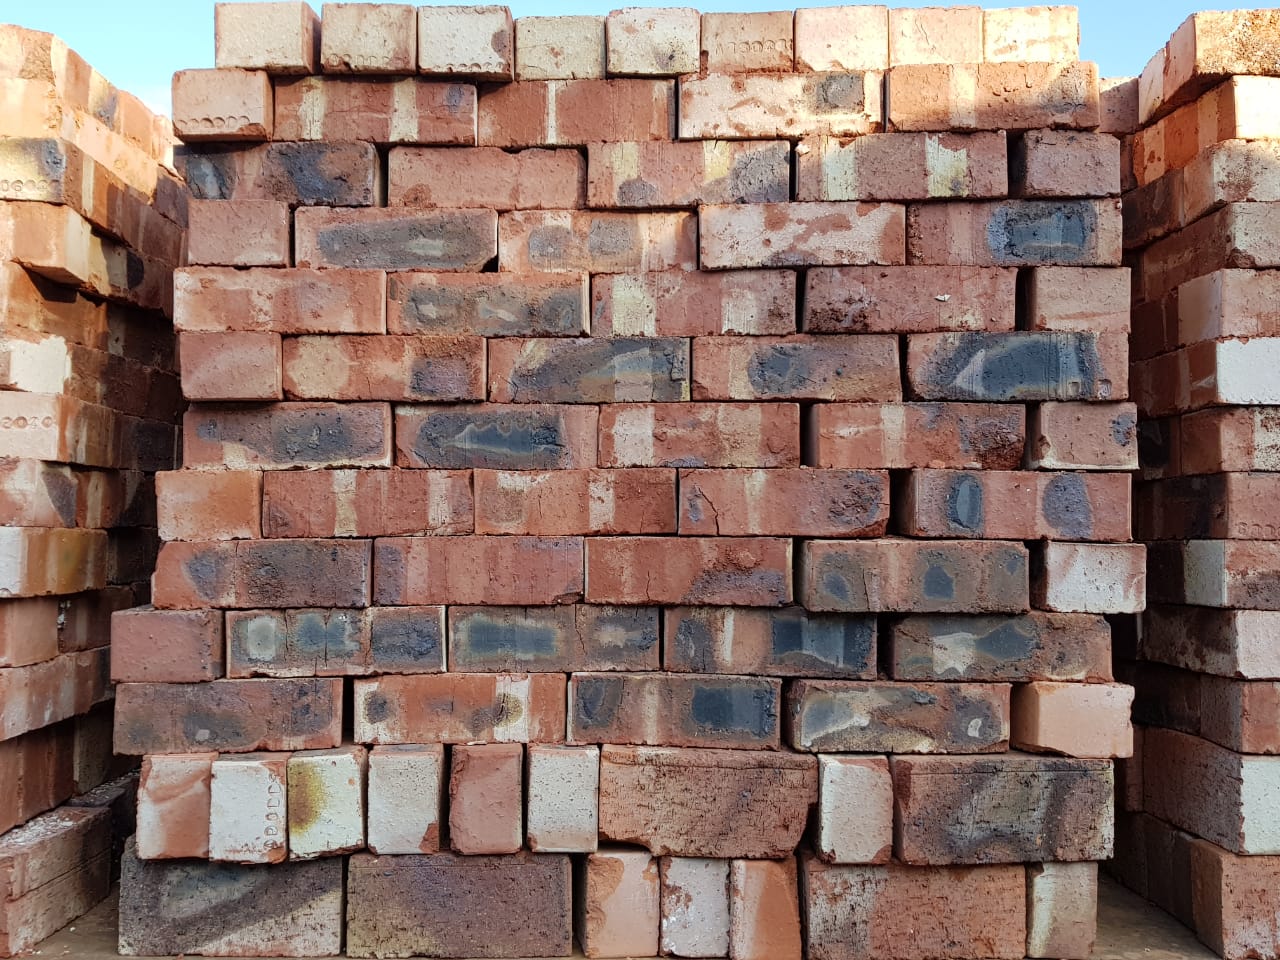 pallet of bricks